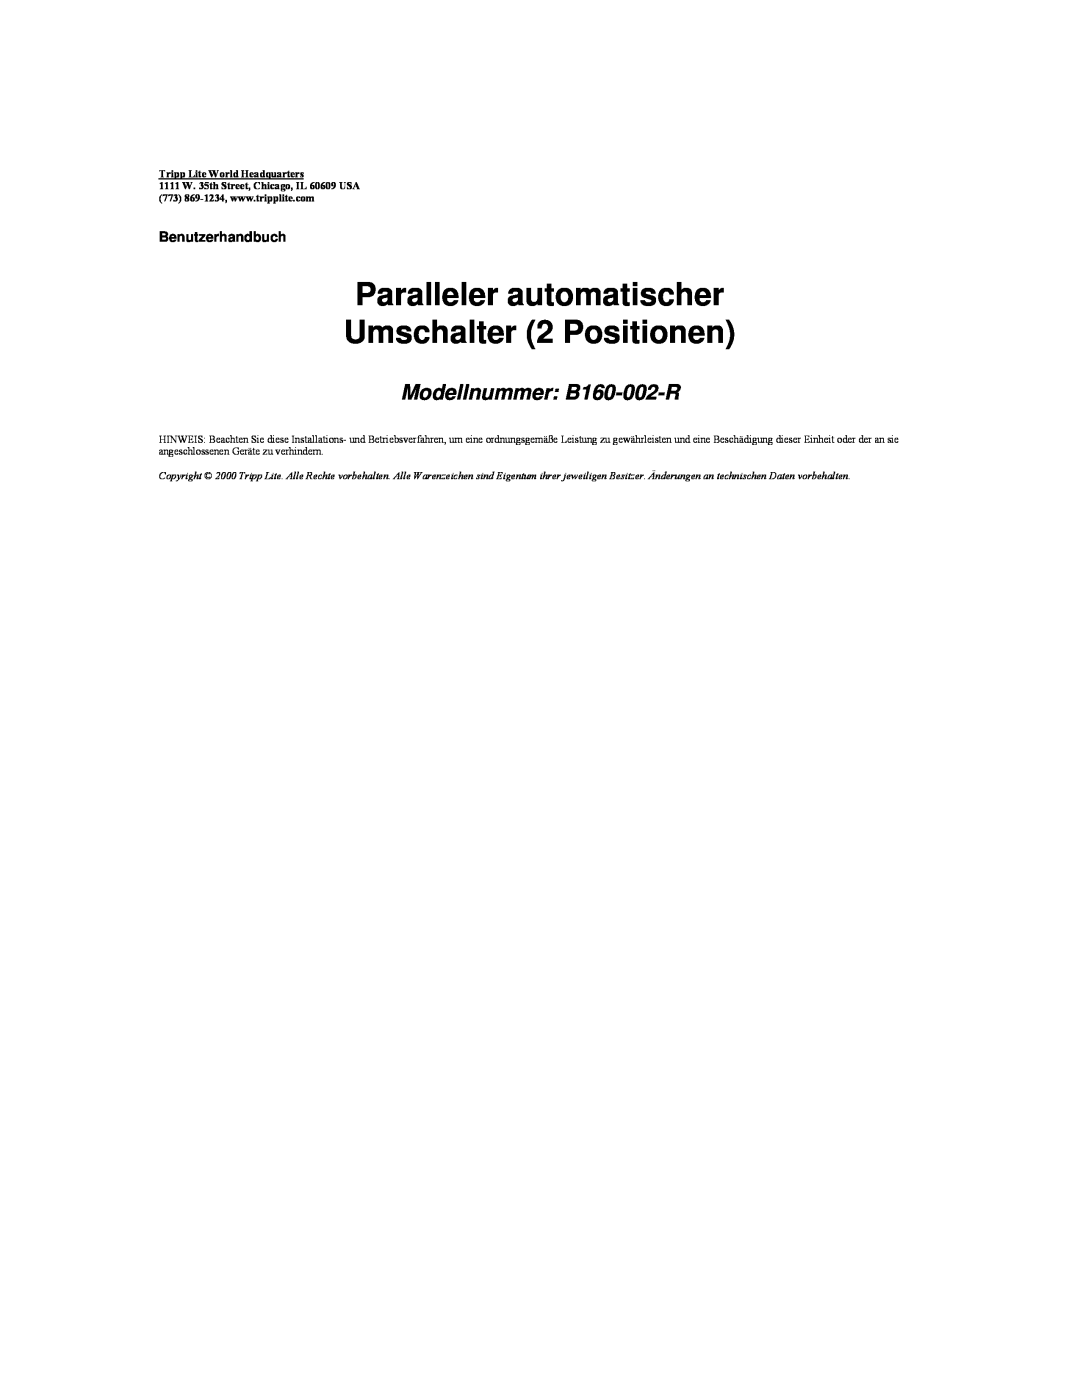 Tripp Lite user manual Paralleler automatischer Umschalter 2 Positionen, Modellnummer B160-002-R, Benutzerhandbuch 